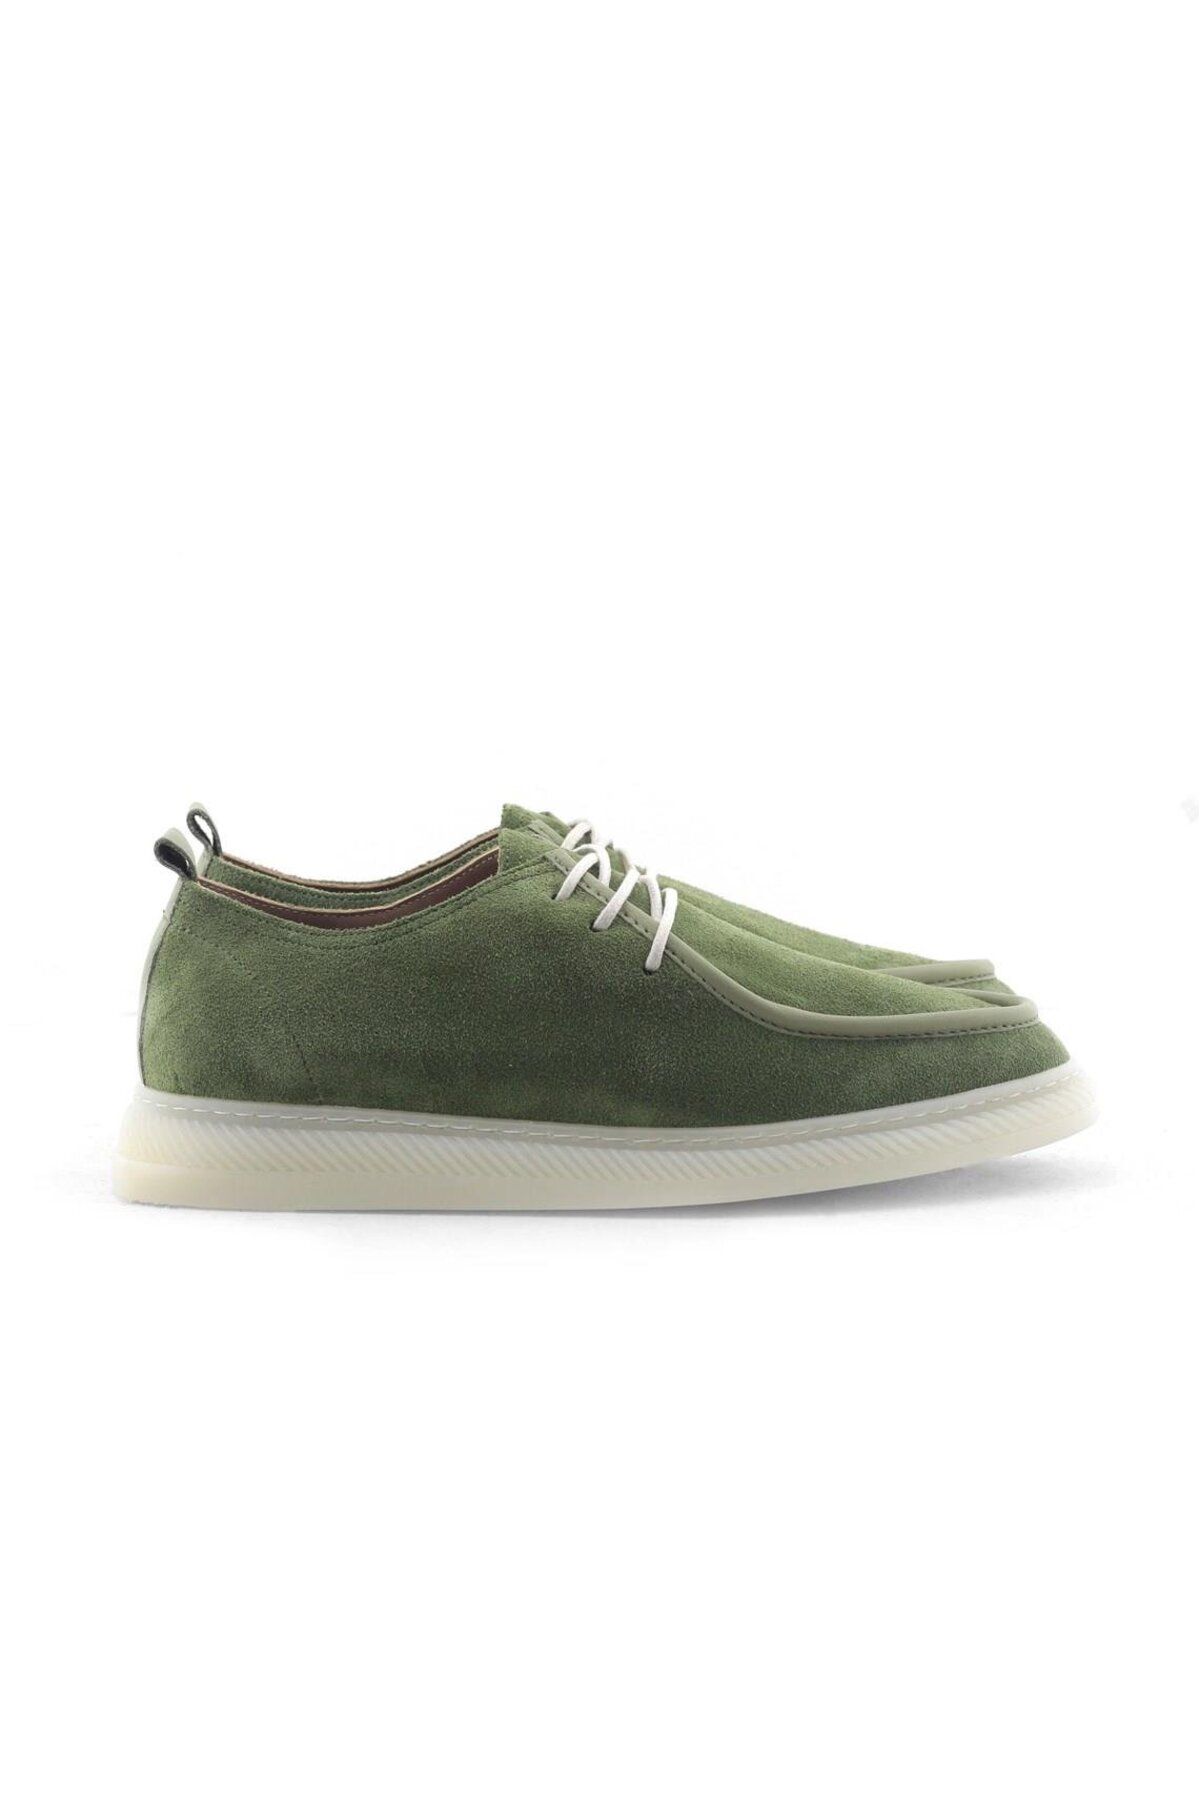 BELİSİA Yeşil Rengi Süet Deri Kadın Sisley Ayakkabı